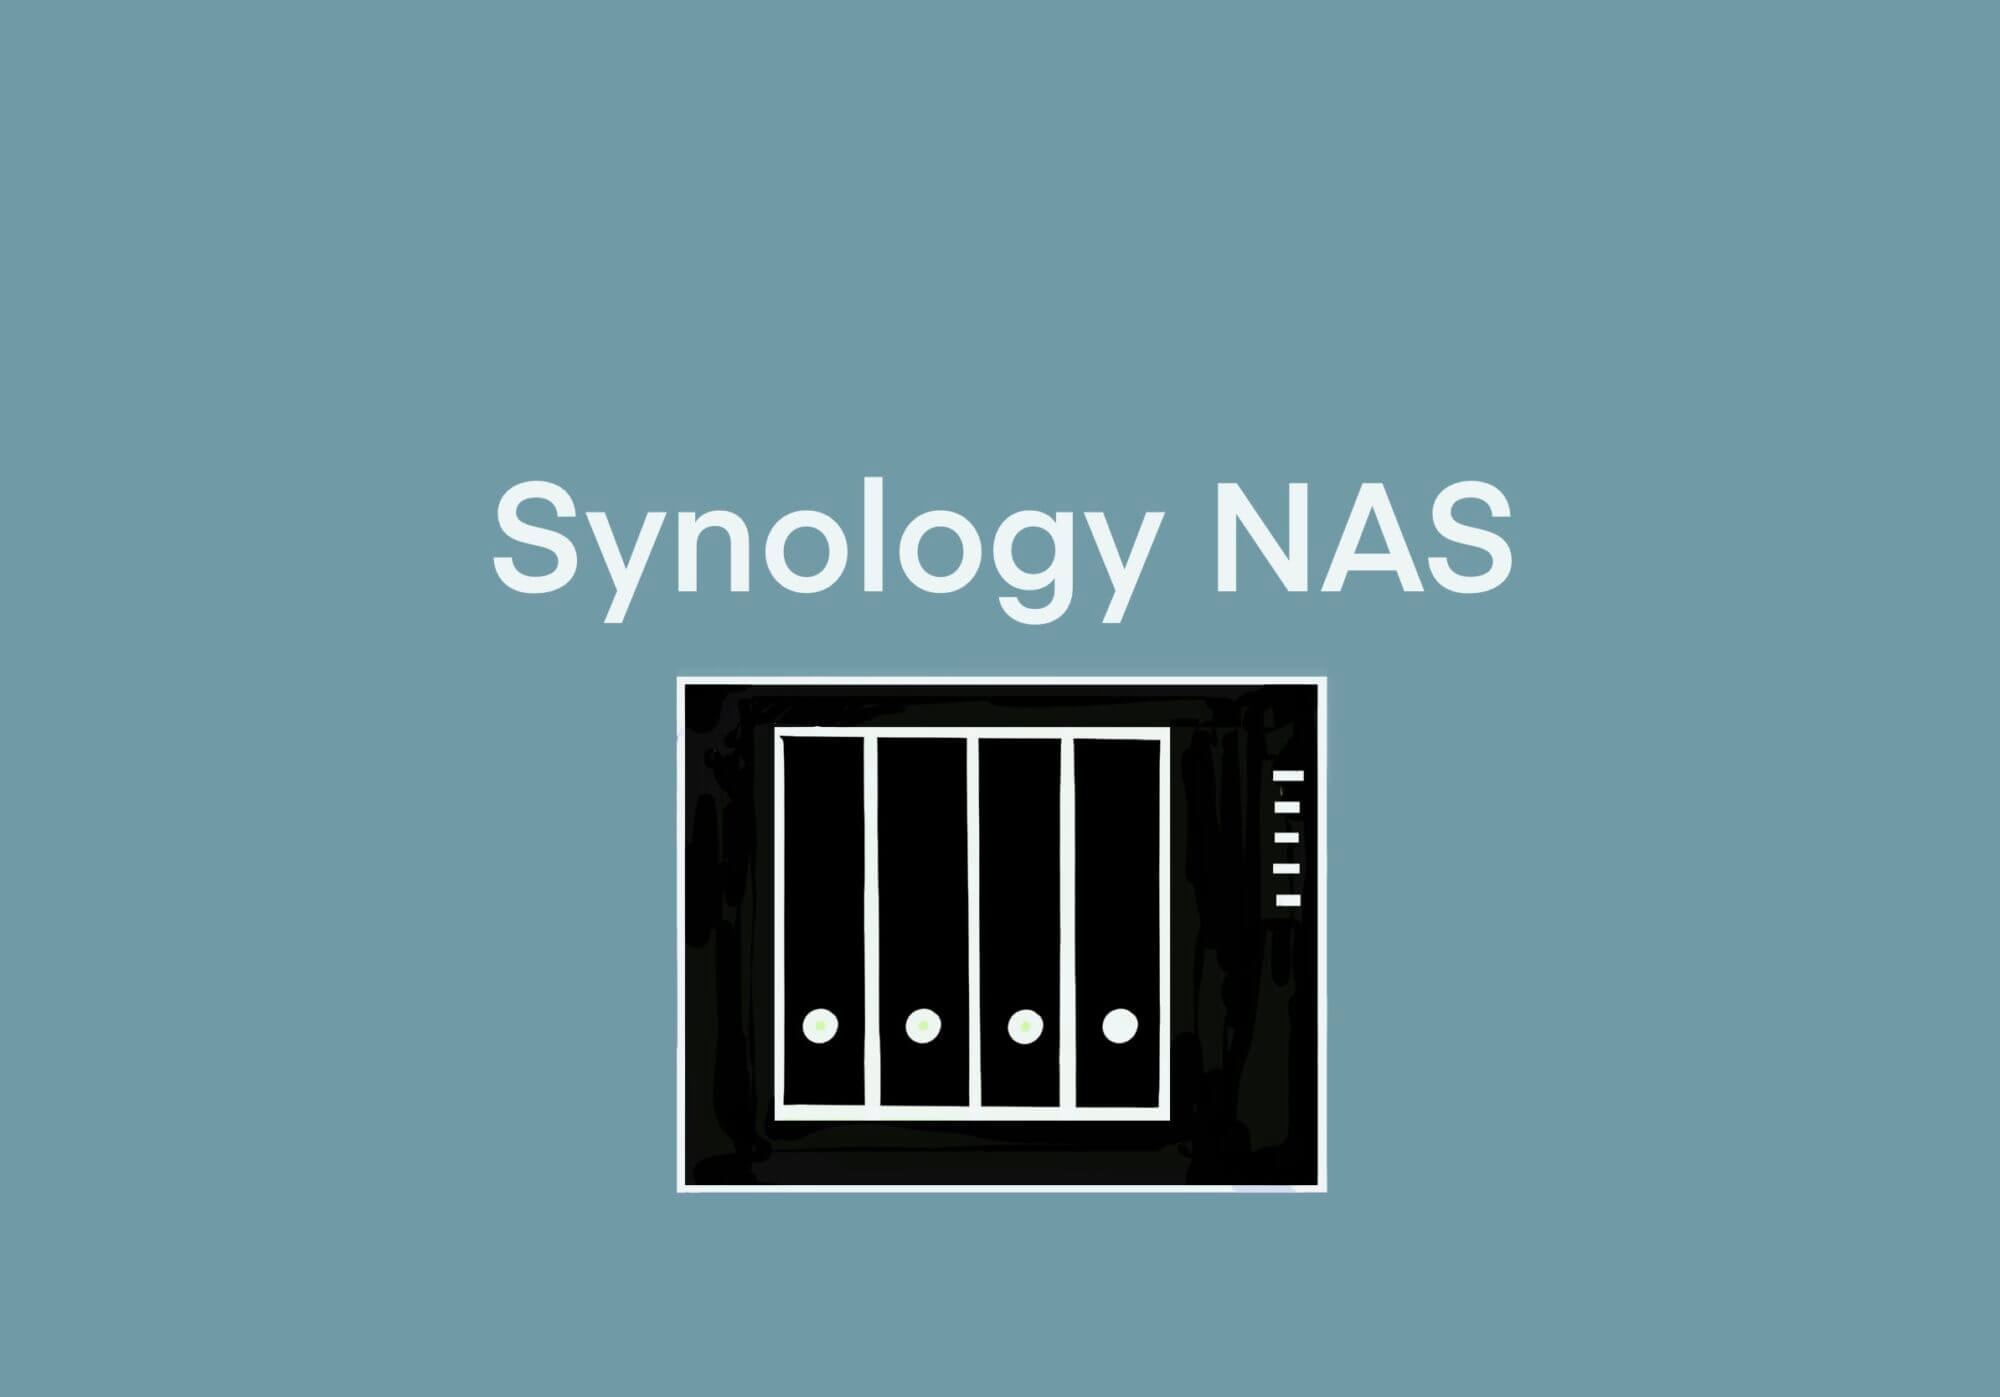 [Synology] 自宅に設置したNASにWordPressを構築してblog配信、高まるネット・リスクとセキュリティ対策 –  [2020/12/31] ID22342